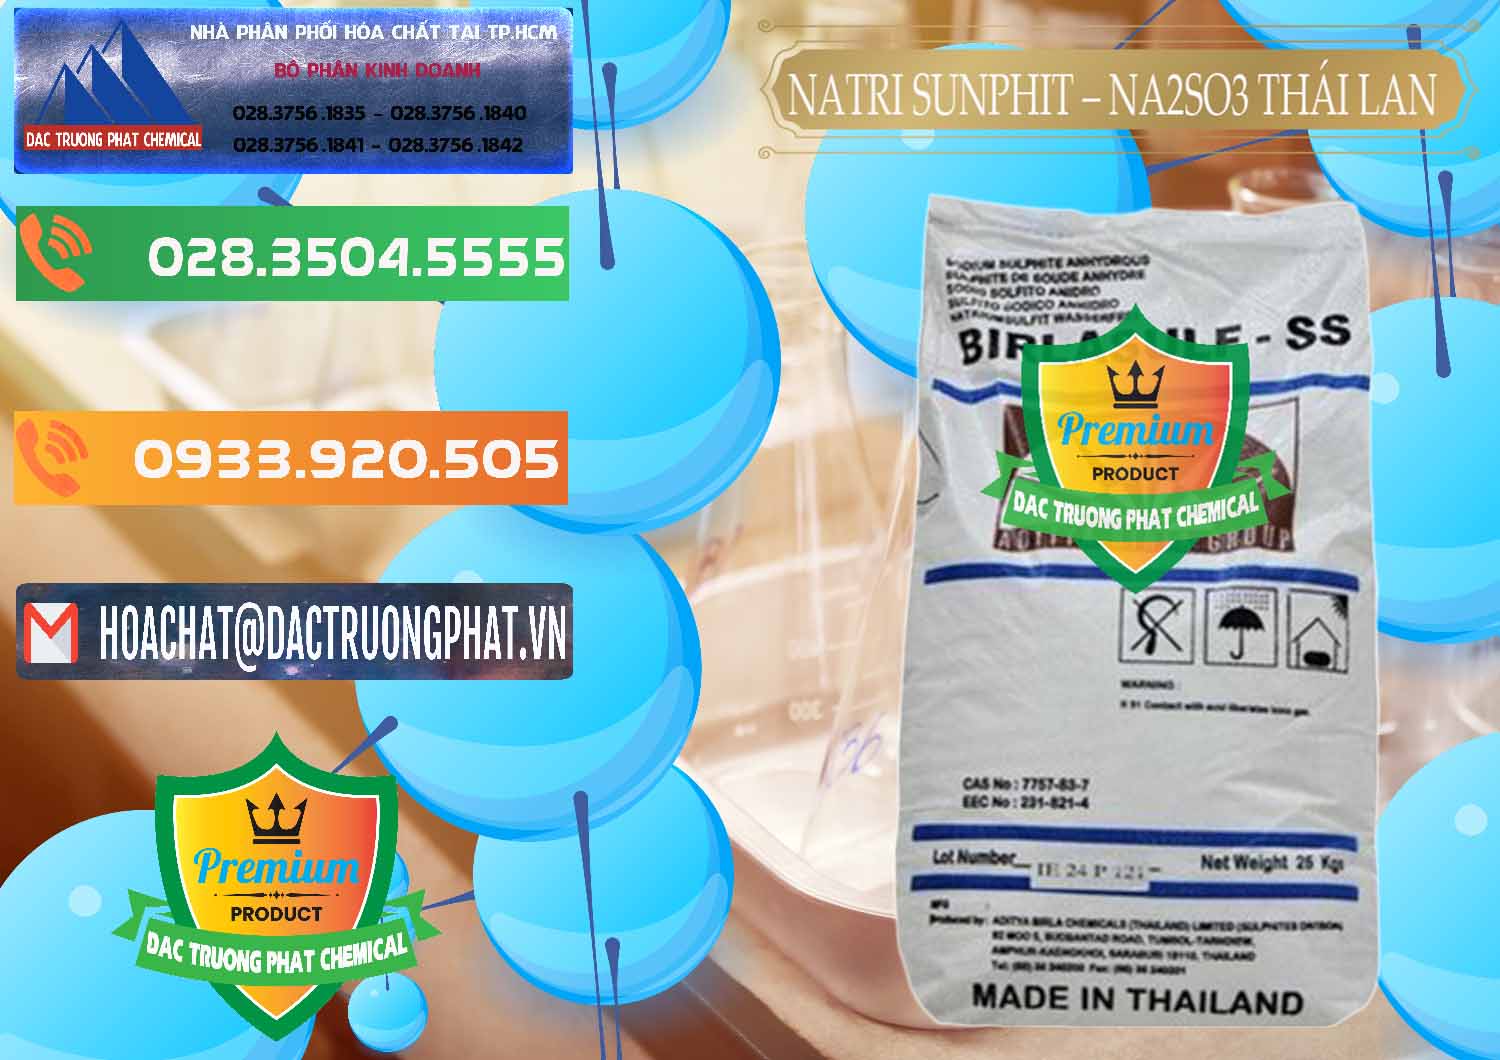 Cty chuyên bán ( phân phối ) Natri Sunphit - NA2SO3 Thái Lan - 0105 - Nơi cung cấp & nhập khẩu hóa chất tại TP.HCM - hoachatxulynuoc.com.vn